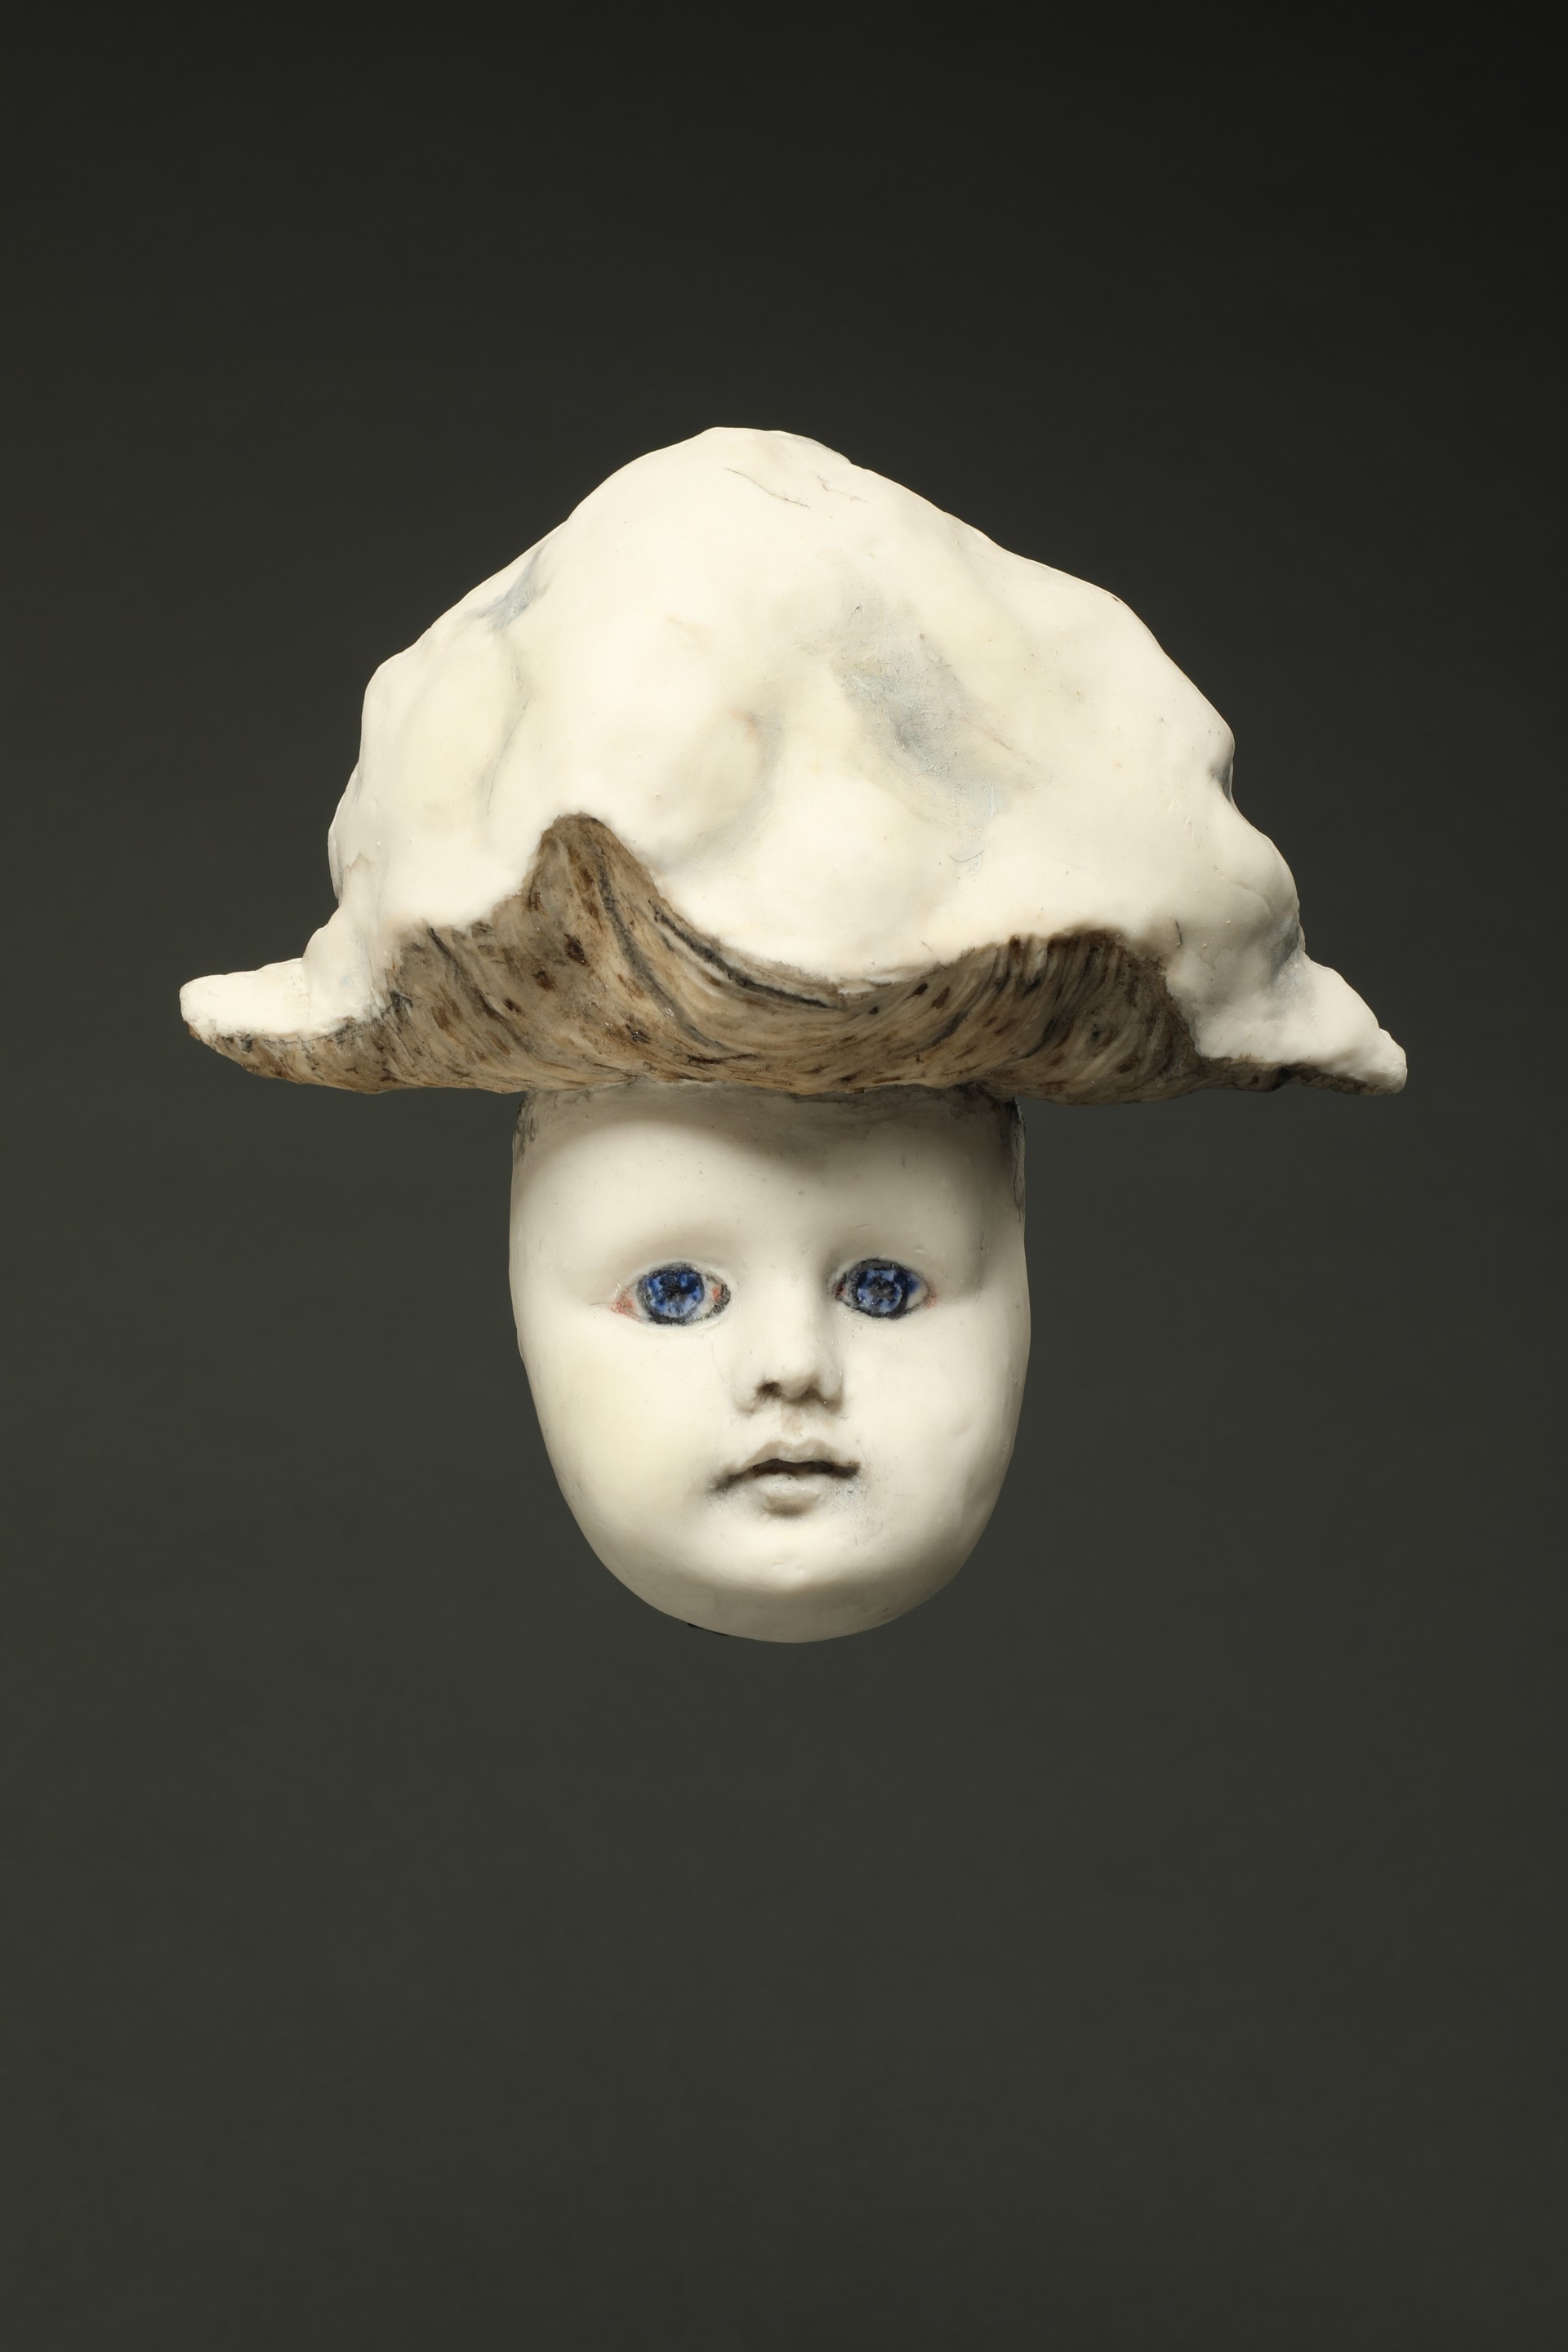 Mushroom Cloud by Margaret Keelan